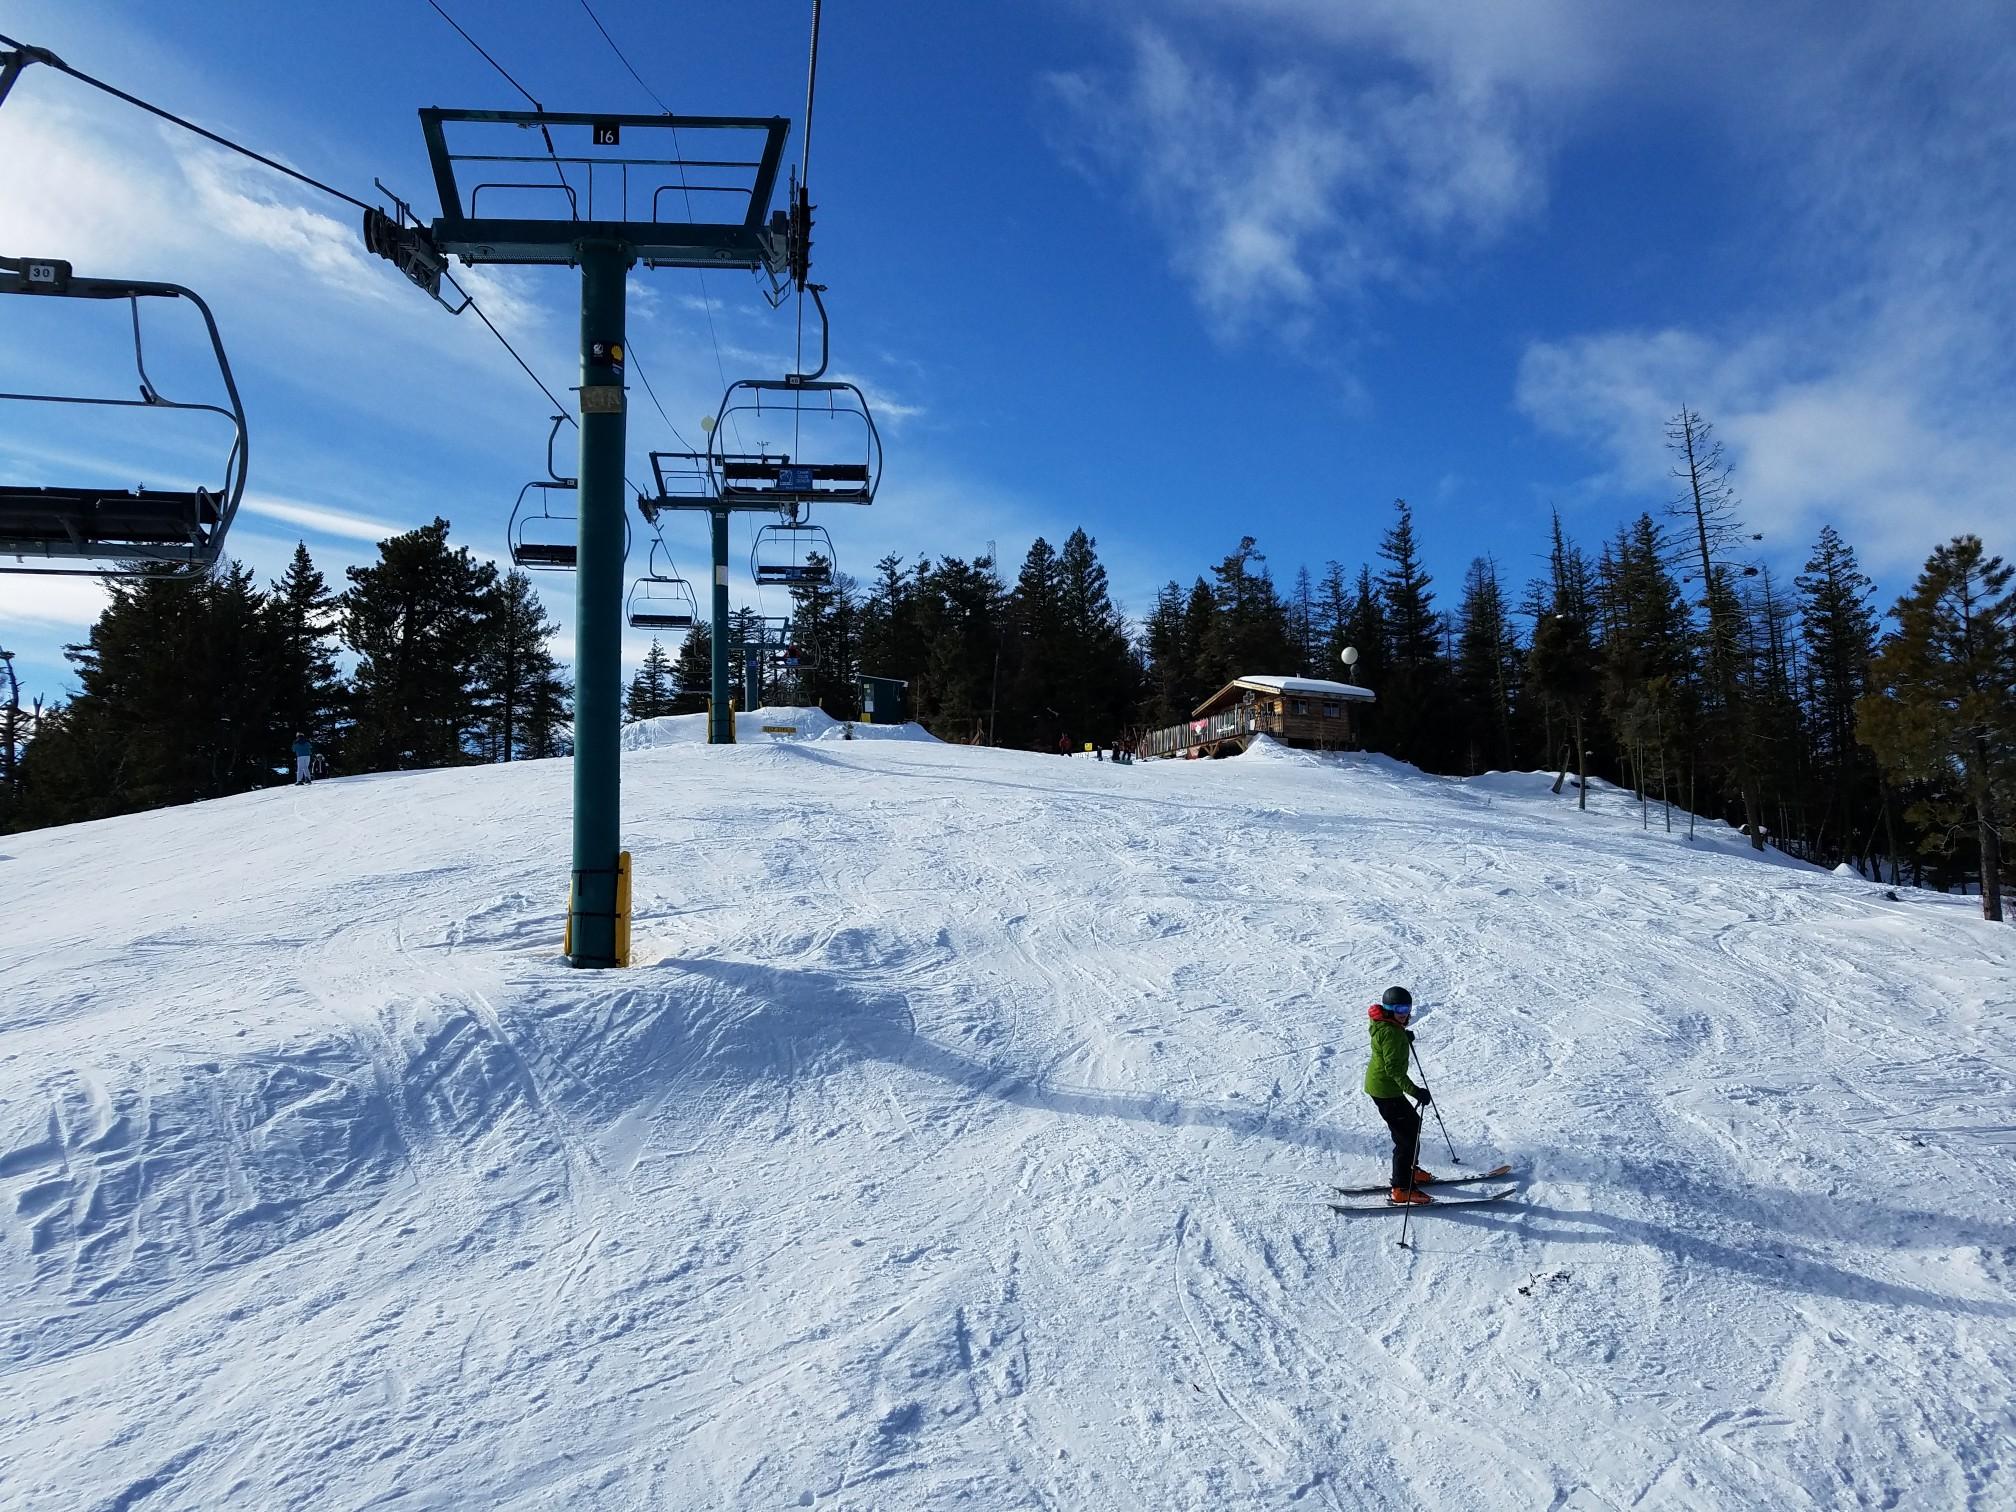 Winter Activities in Methow Valley February 2020